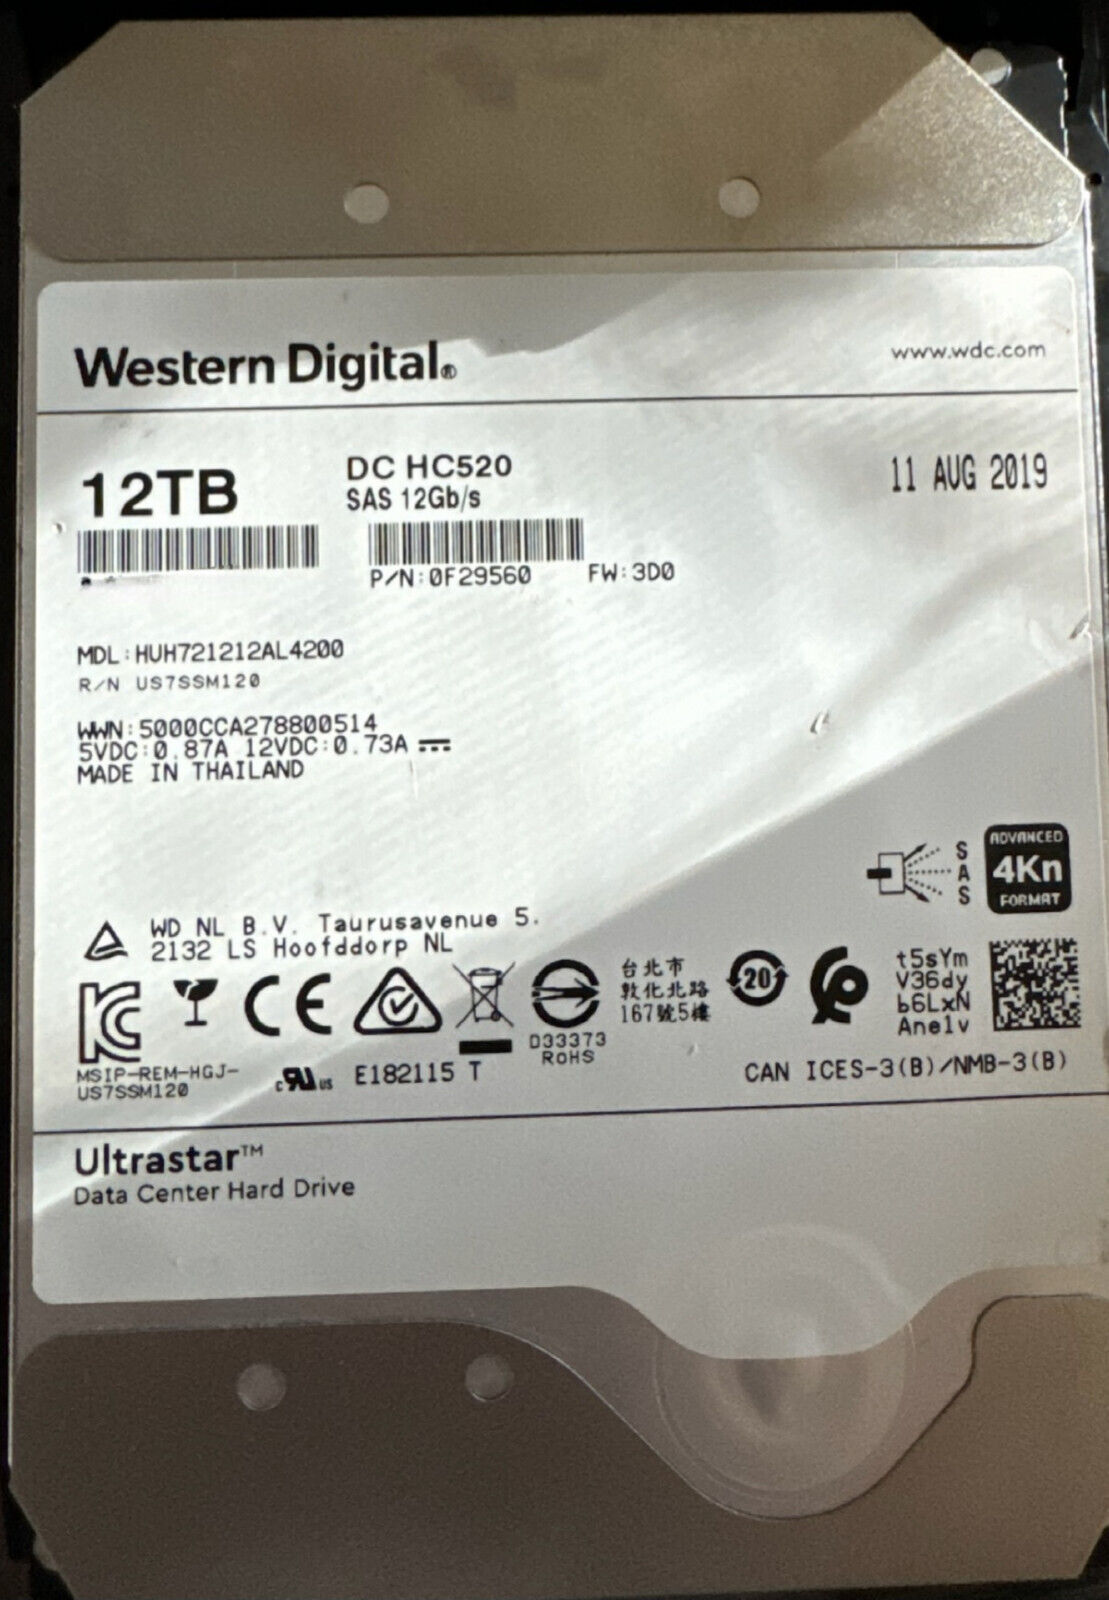 WD Ultrastar DC HC520 | HUH721212AL4200 (0F29560) | 12TB 7200 RPM  | SAS | NAS